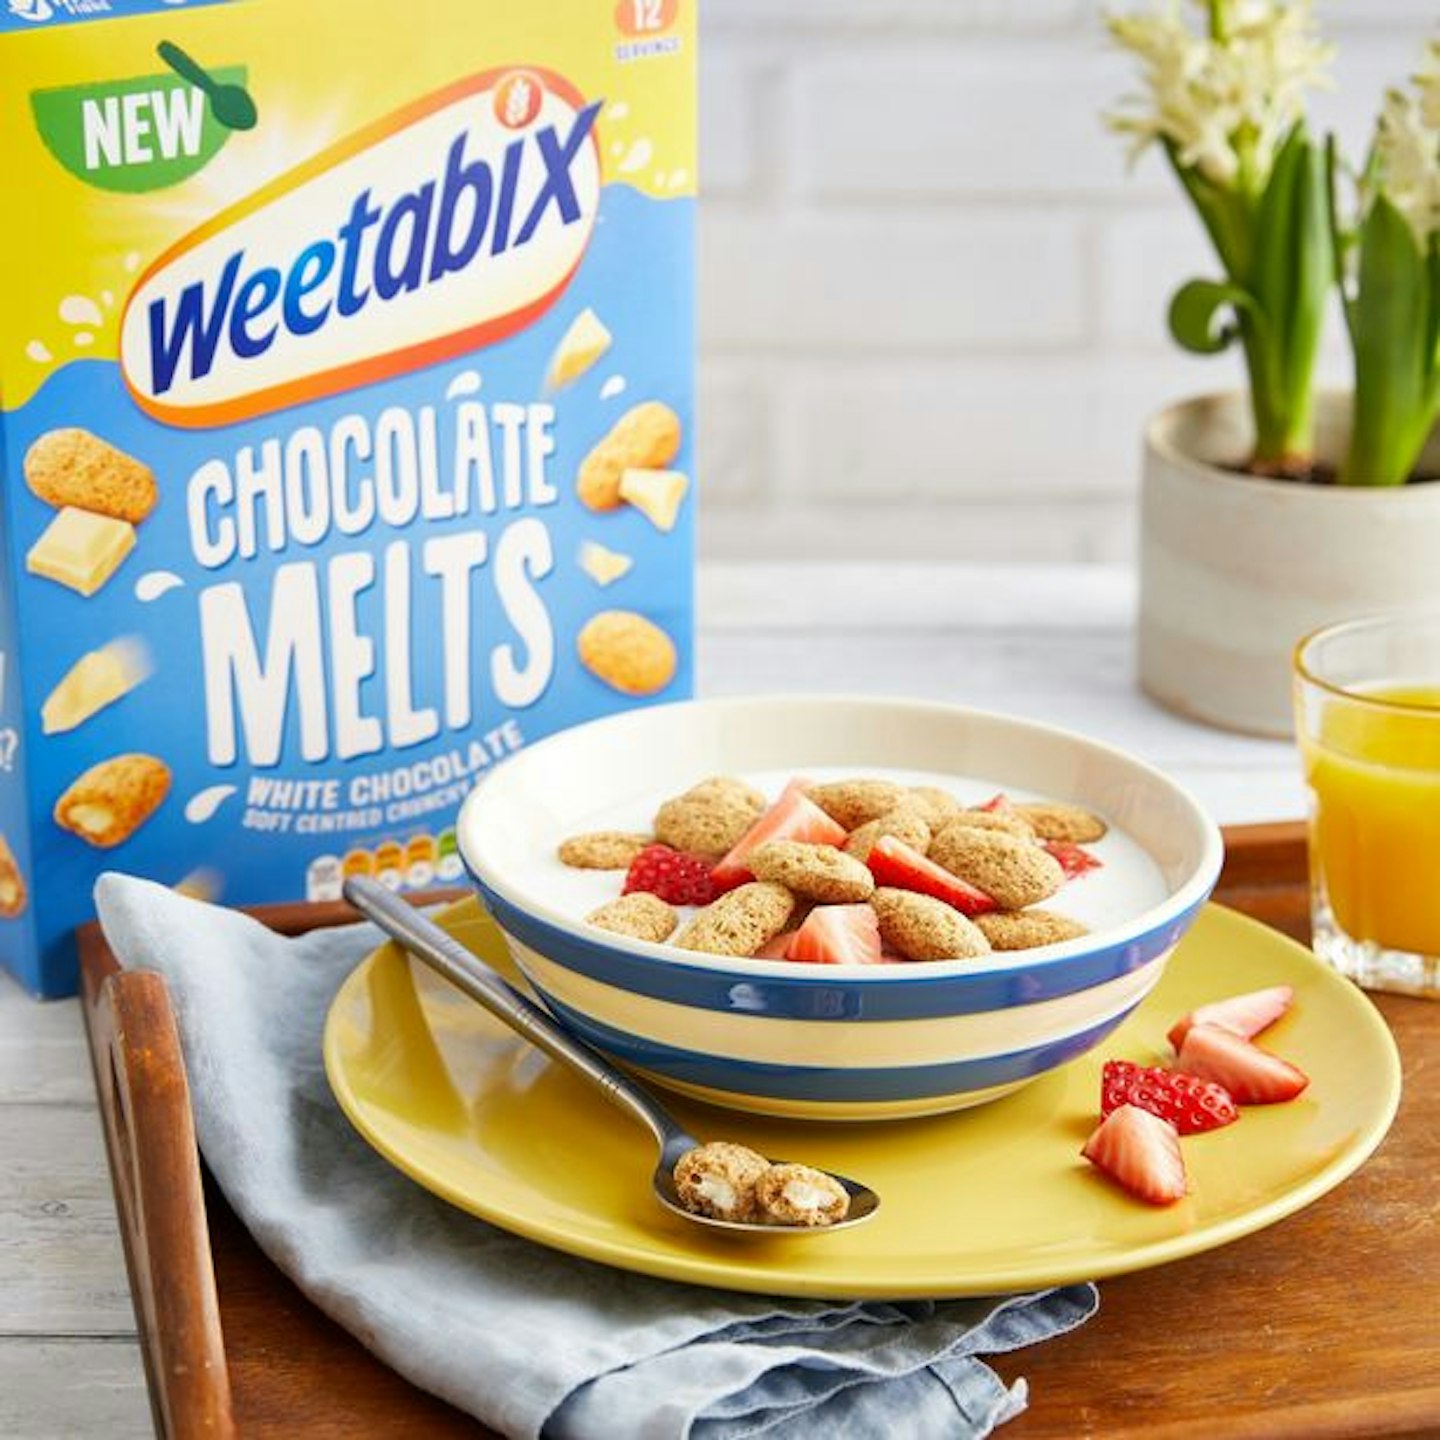 Weetabix Chocolate melts 